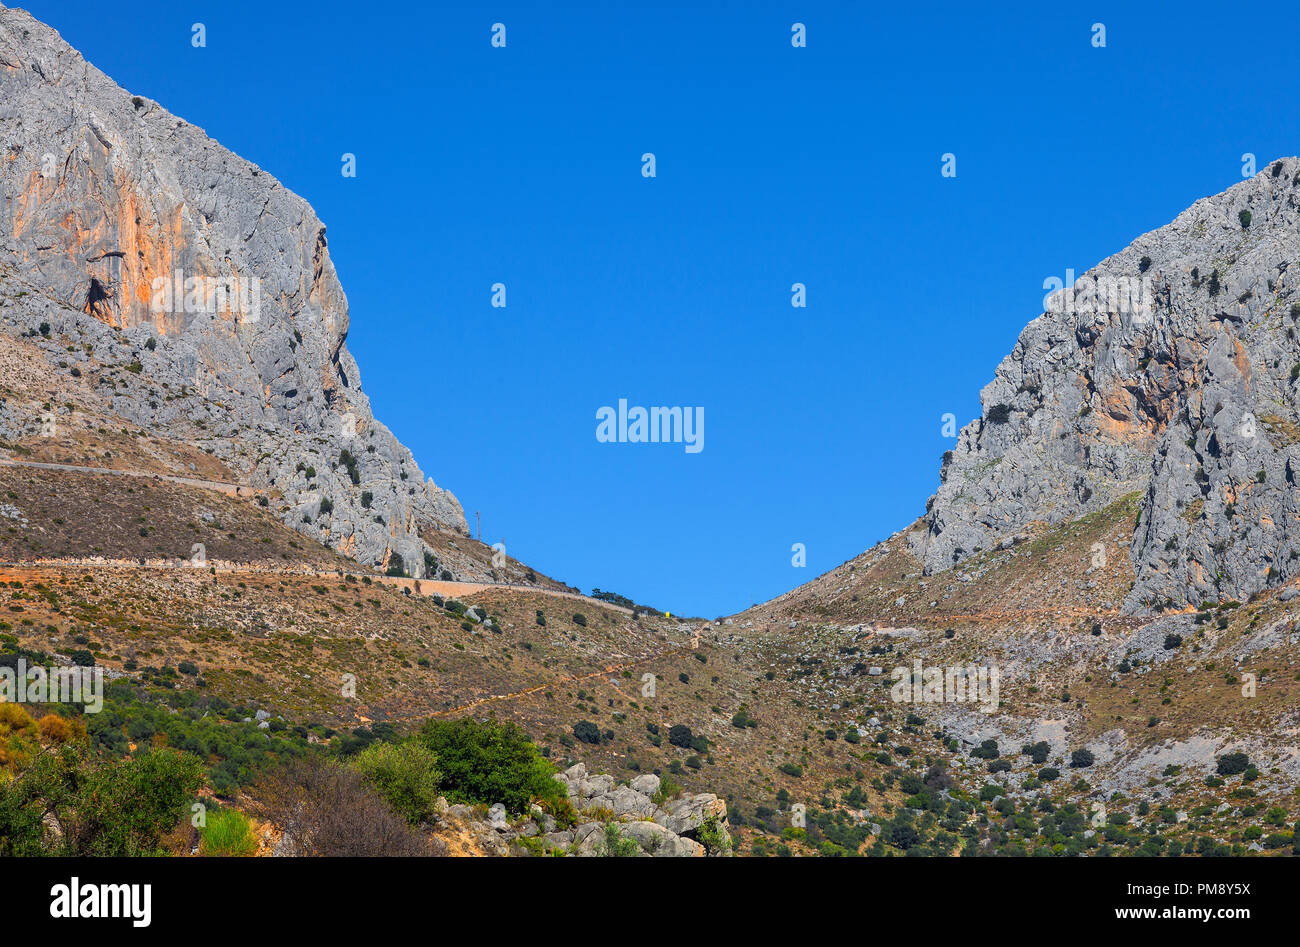 El Boquete de Zafarraya, un paso de montaña de la Cordillera Penibética, situado en la Sierra de Alhama , entre las provincias de Málaga y Granada. Foto de stock